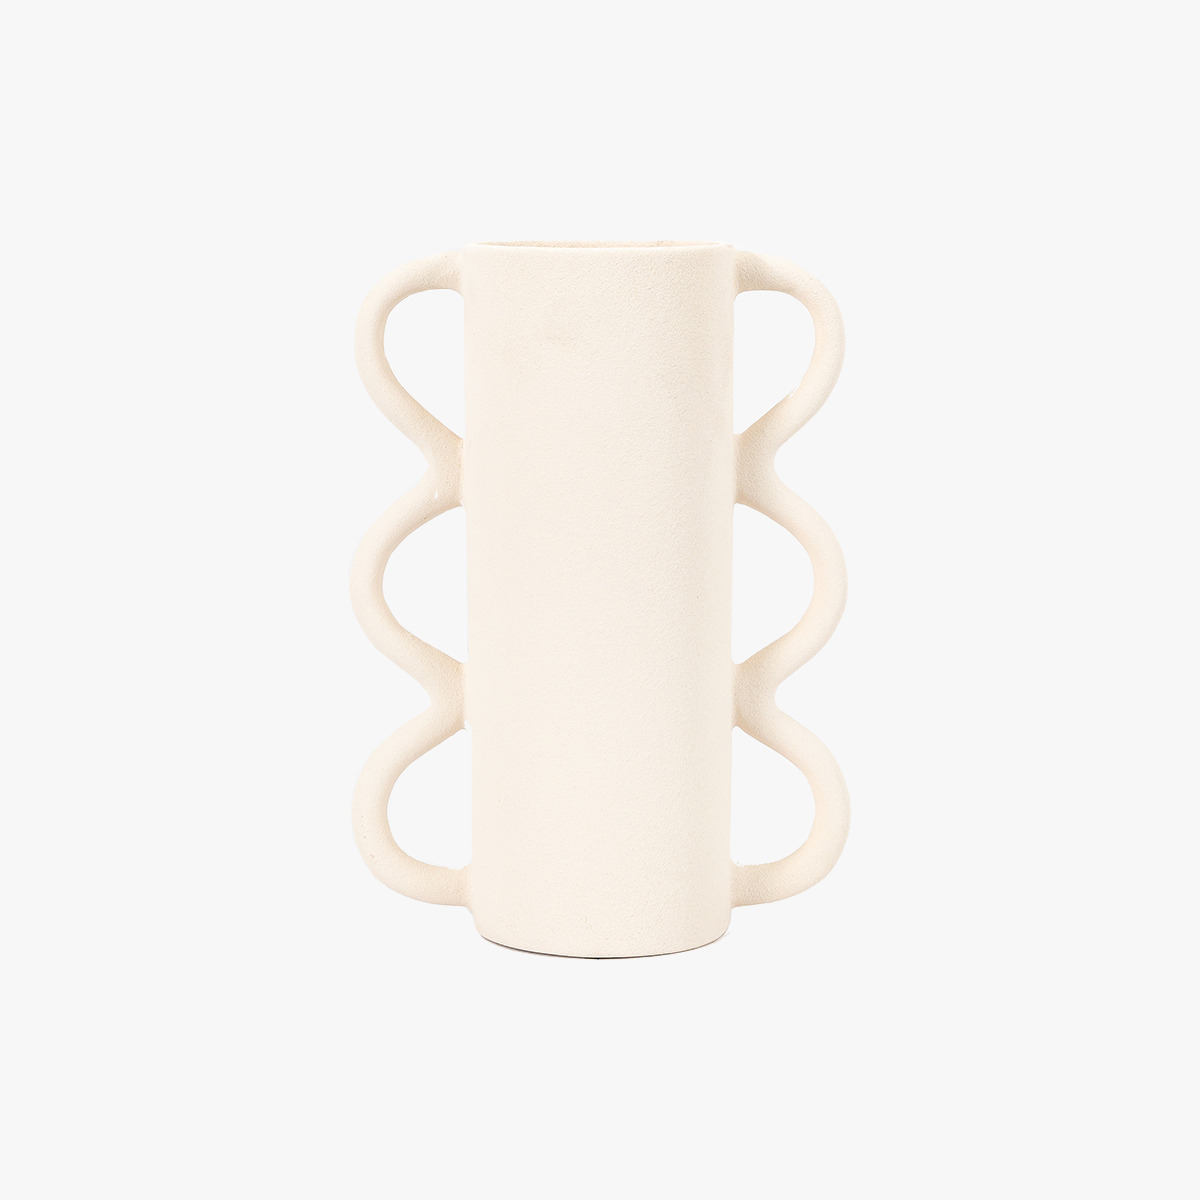 Wiggle Vase in White